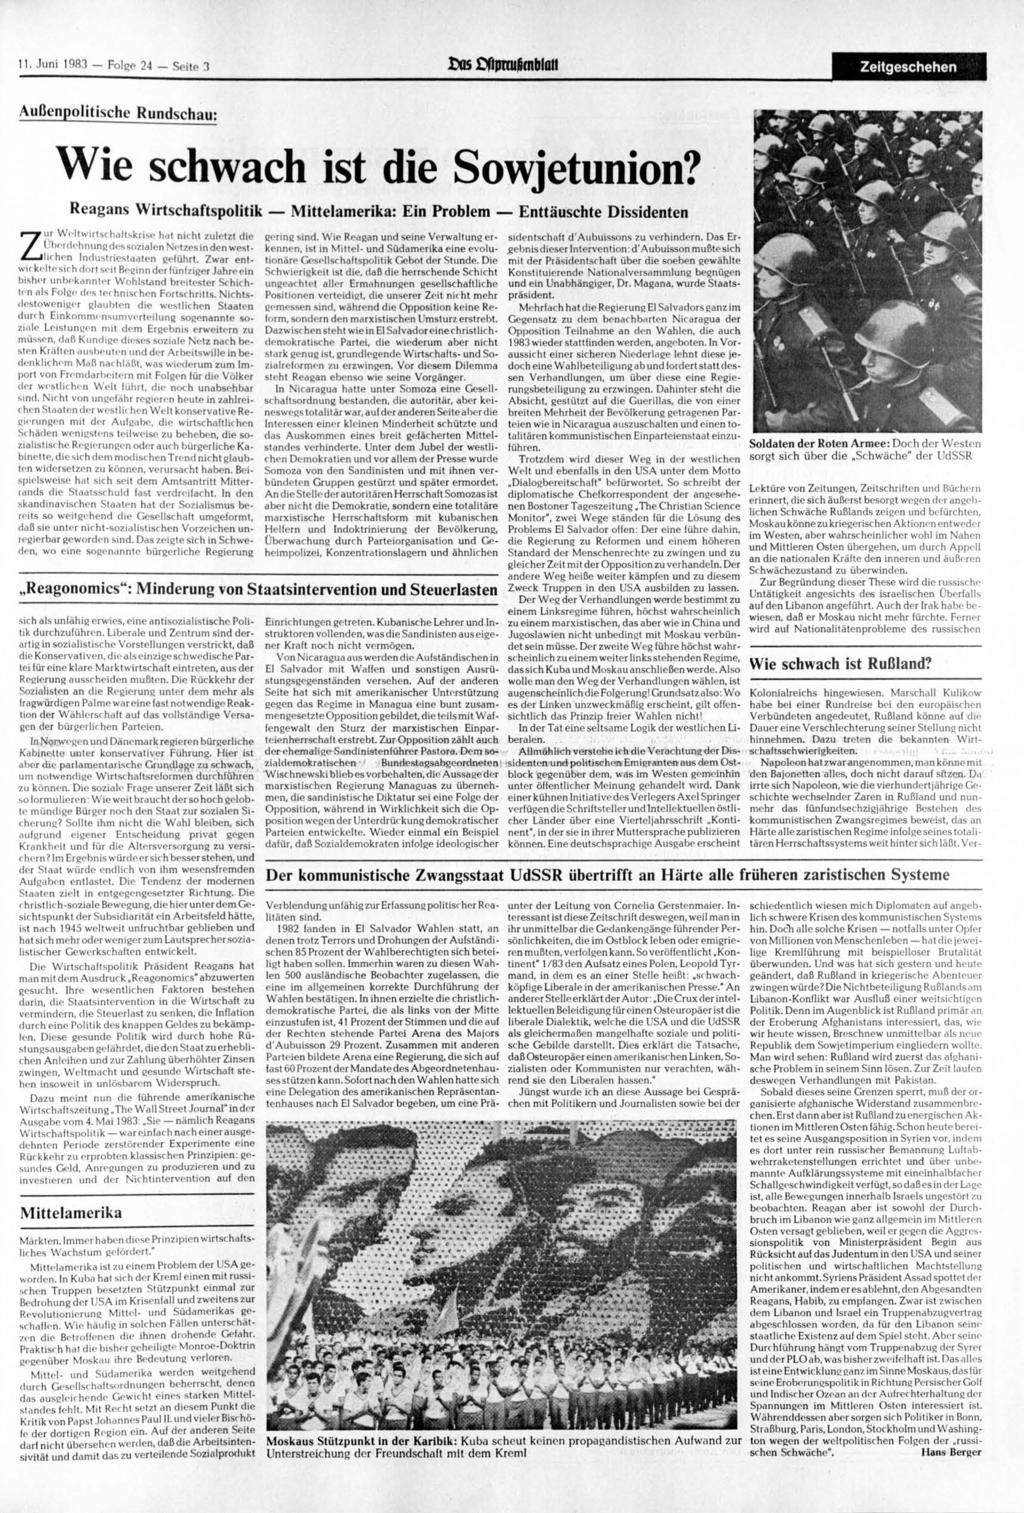 11. 1983 Folge 24 Seite 3 Cos ftpmjfjmblatt Zeitgeschehen Außenpolitische Rundschau: Z Wie schwach ist die Sowjetunion?